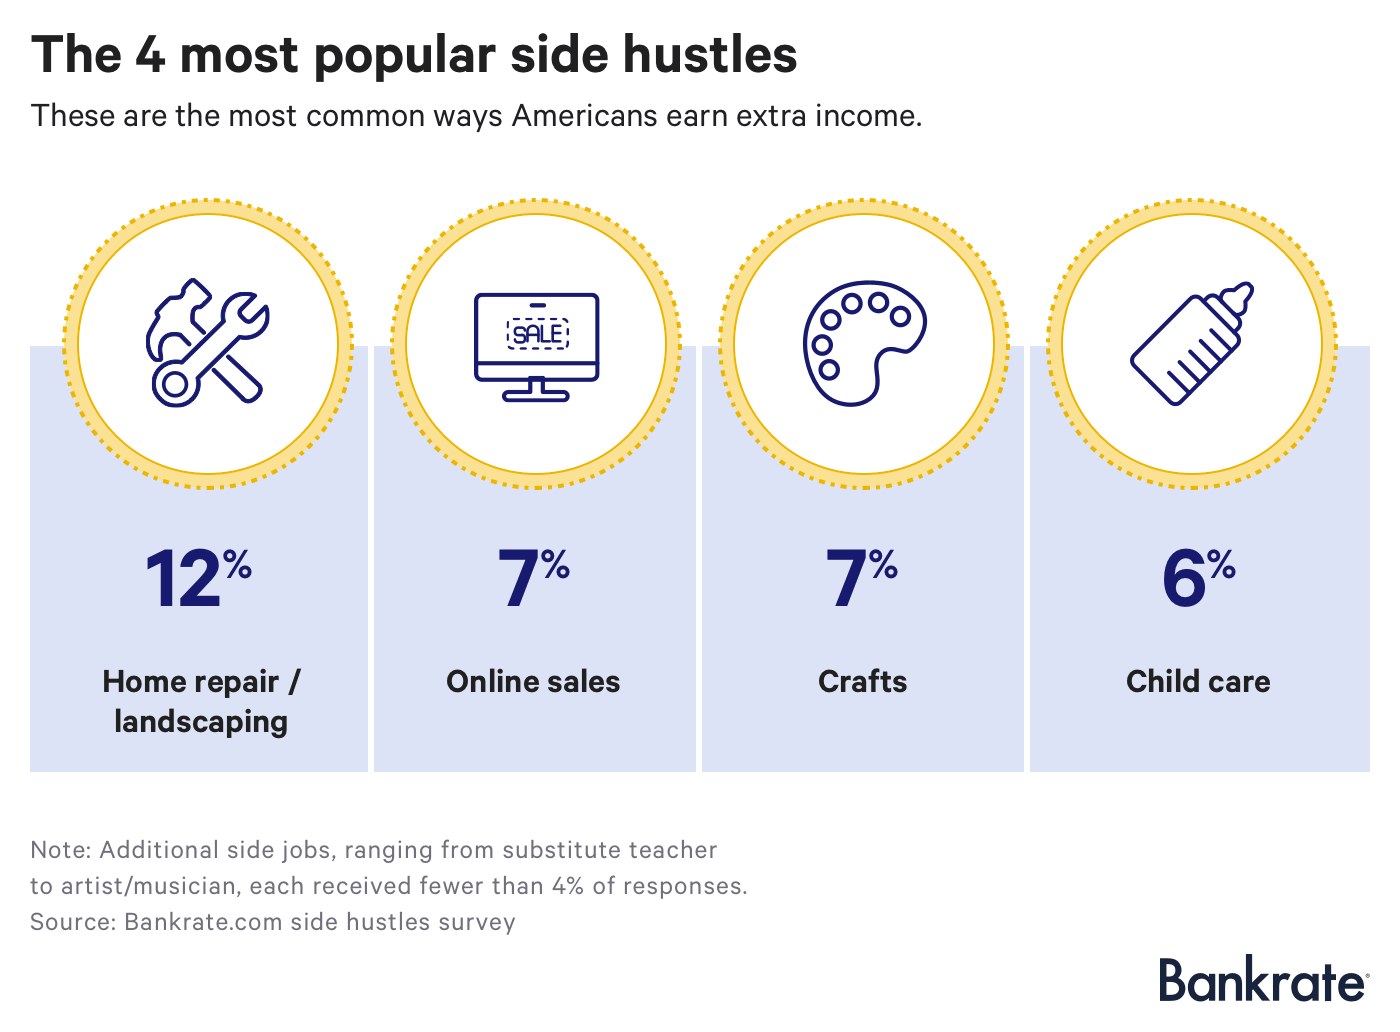 The average side hustler earns over $8K annually